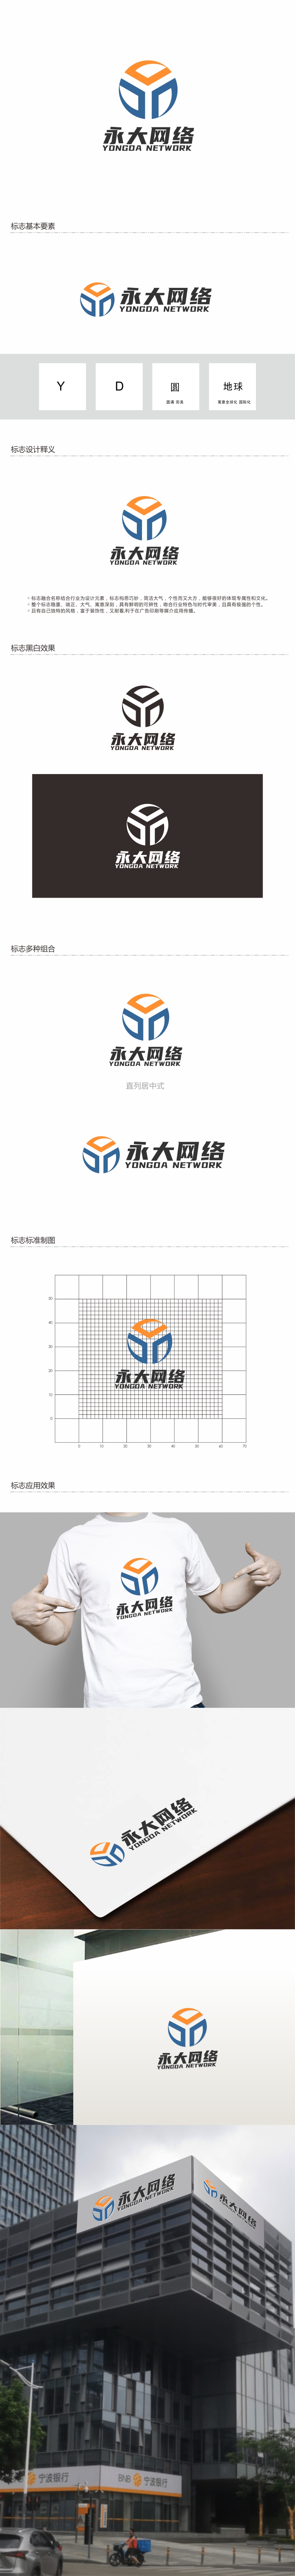 周战军的永大网络logo设计